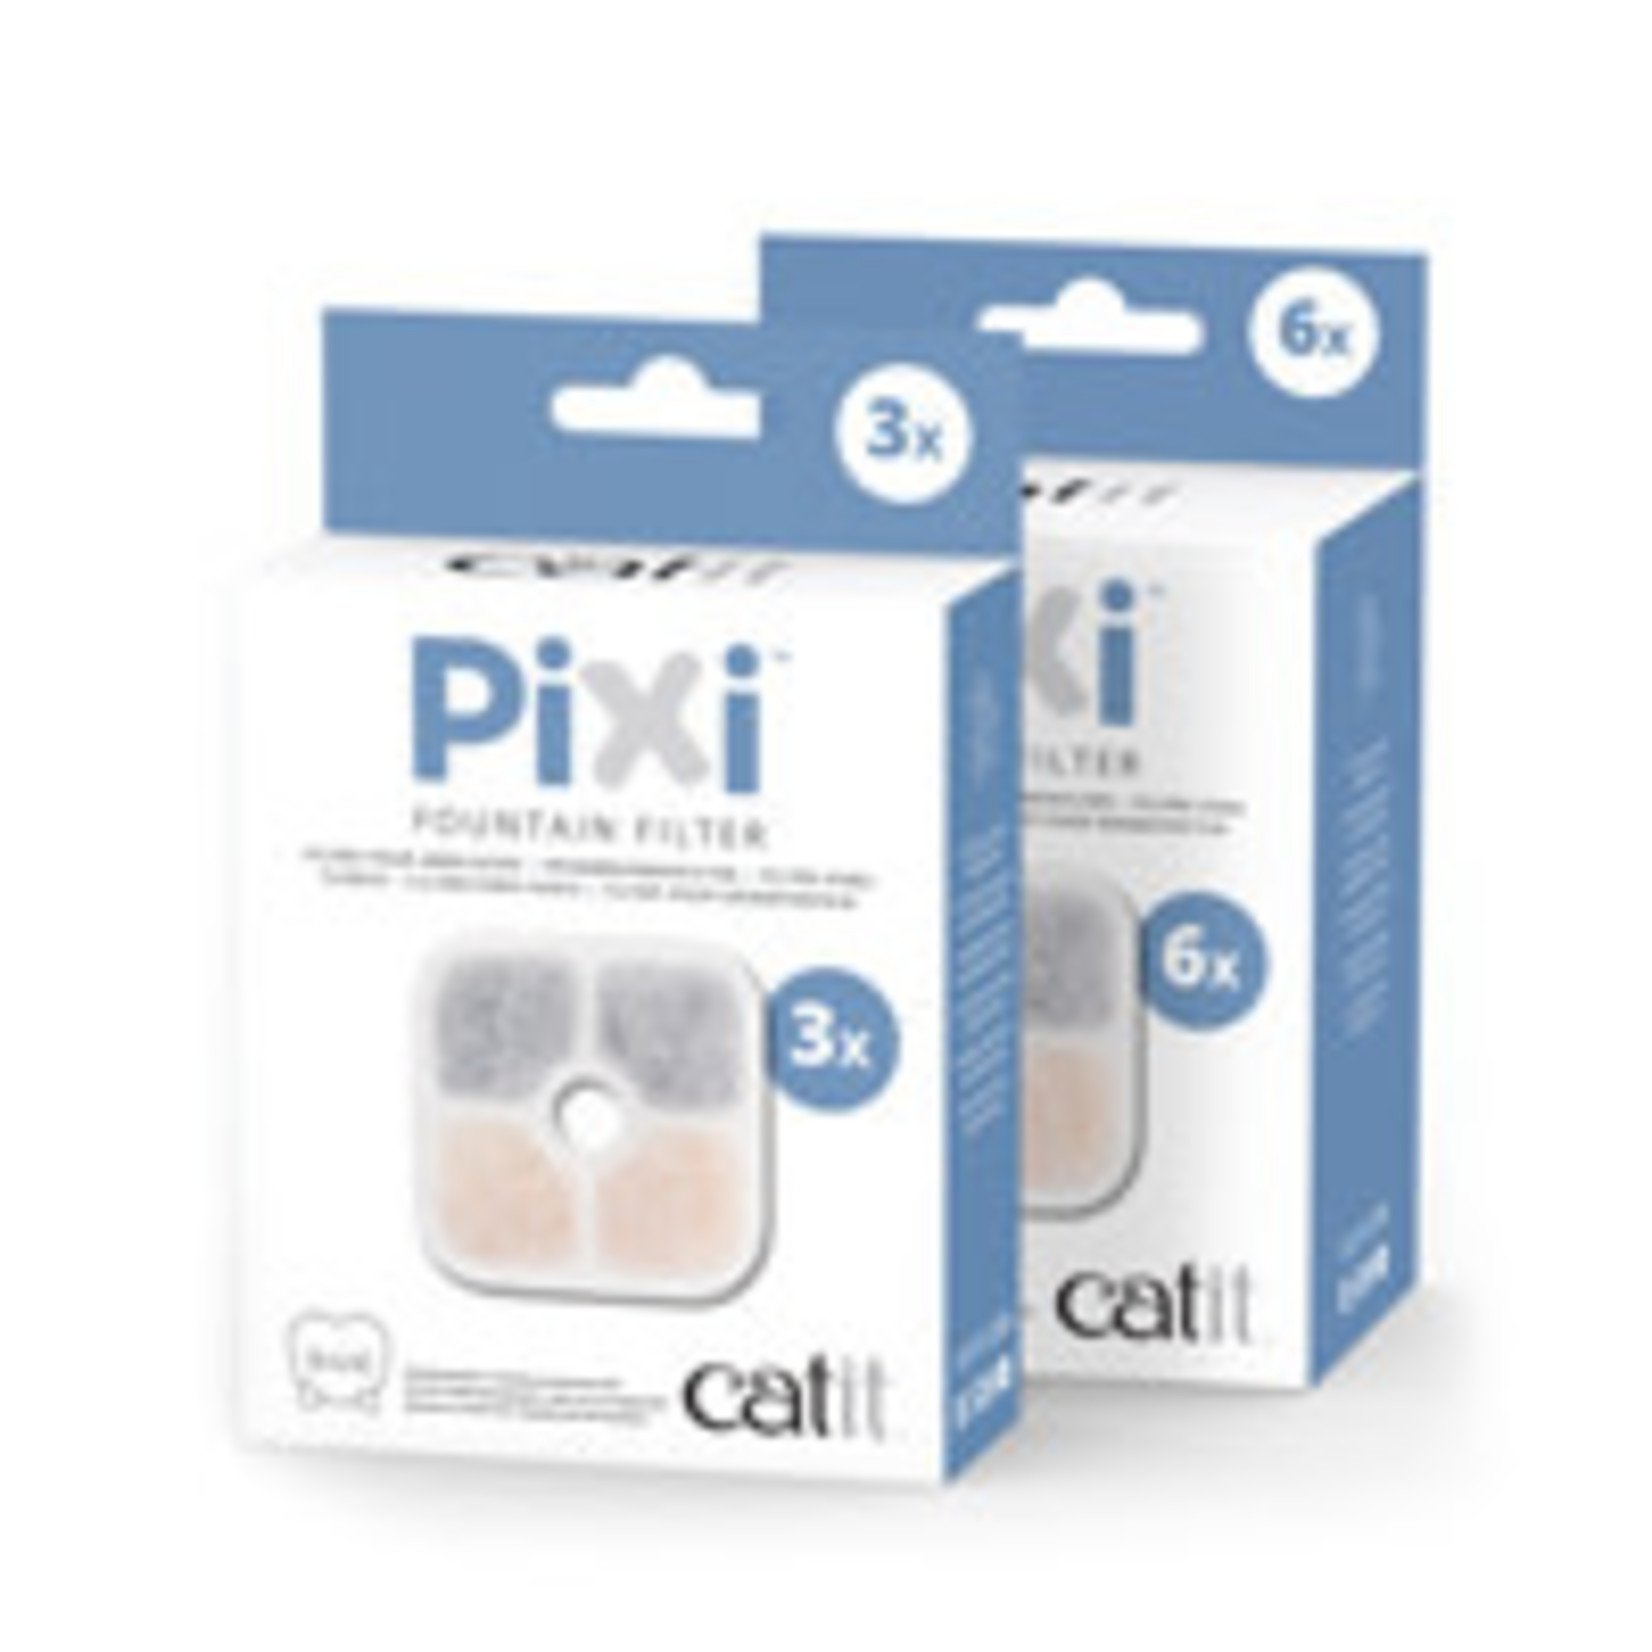 CATIT Catit PIXI Fountain Cartridges - 3 pack